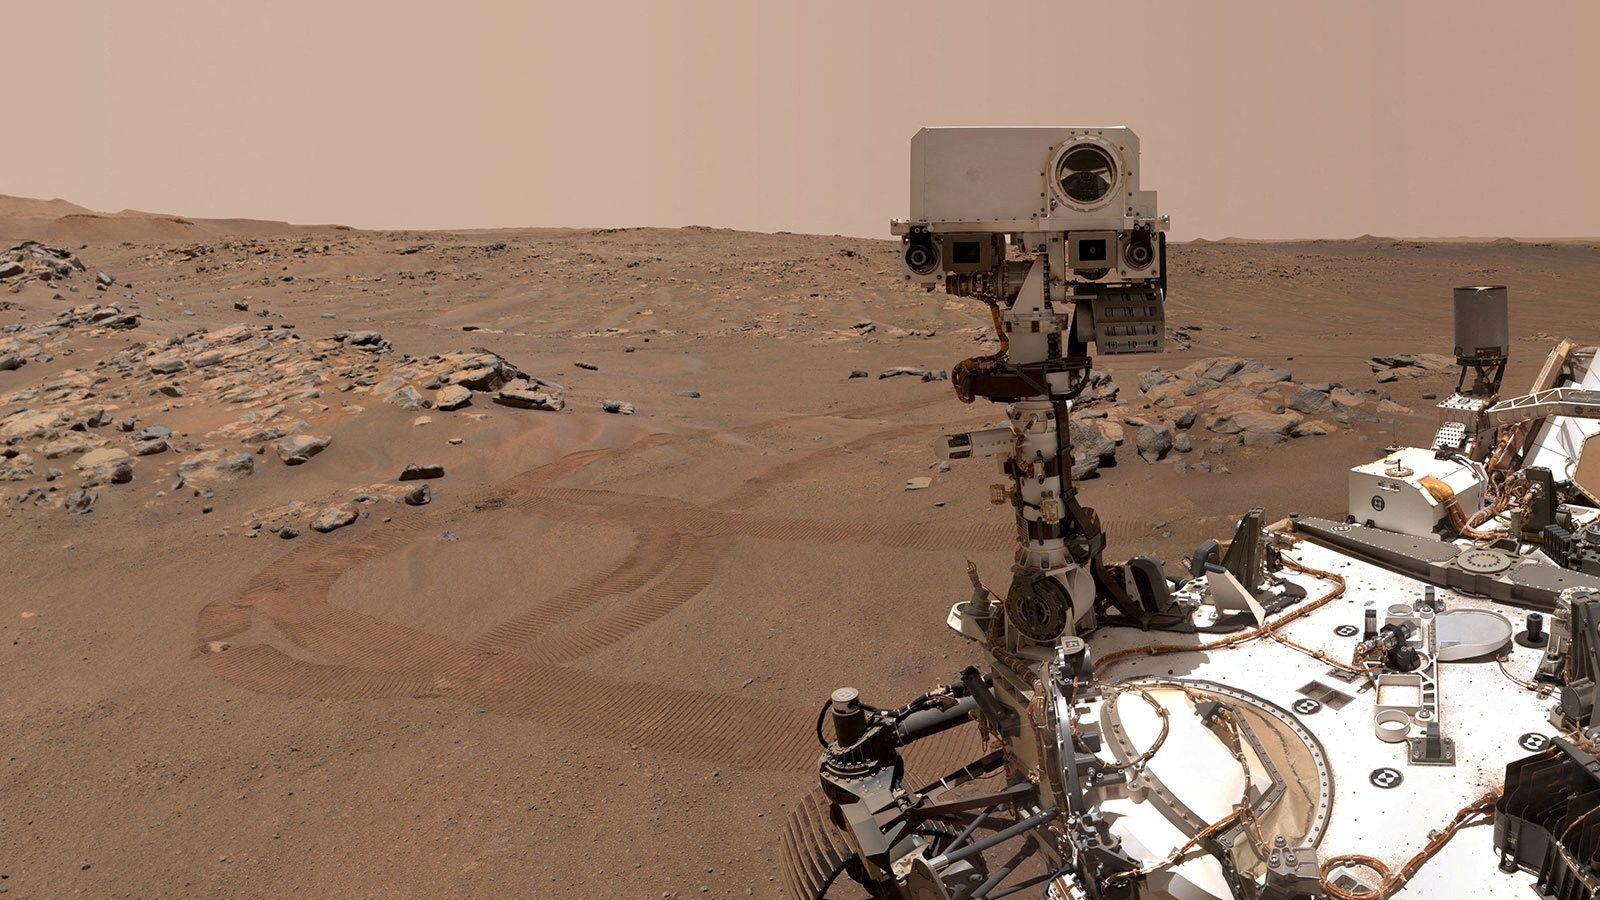 El rover Perseverance en Marte ya completó el depósito de muestras marcianas ( NASA/JPL-CALTECH/MSSS/Handout via REUTERS) 